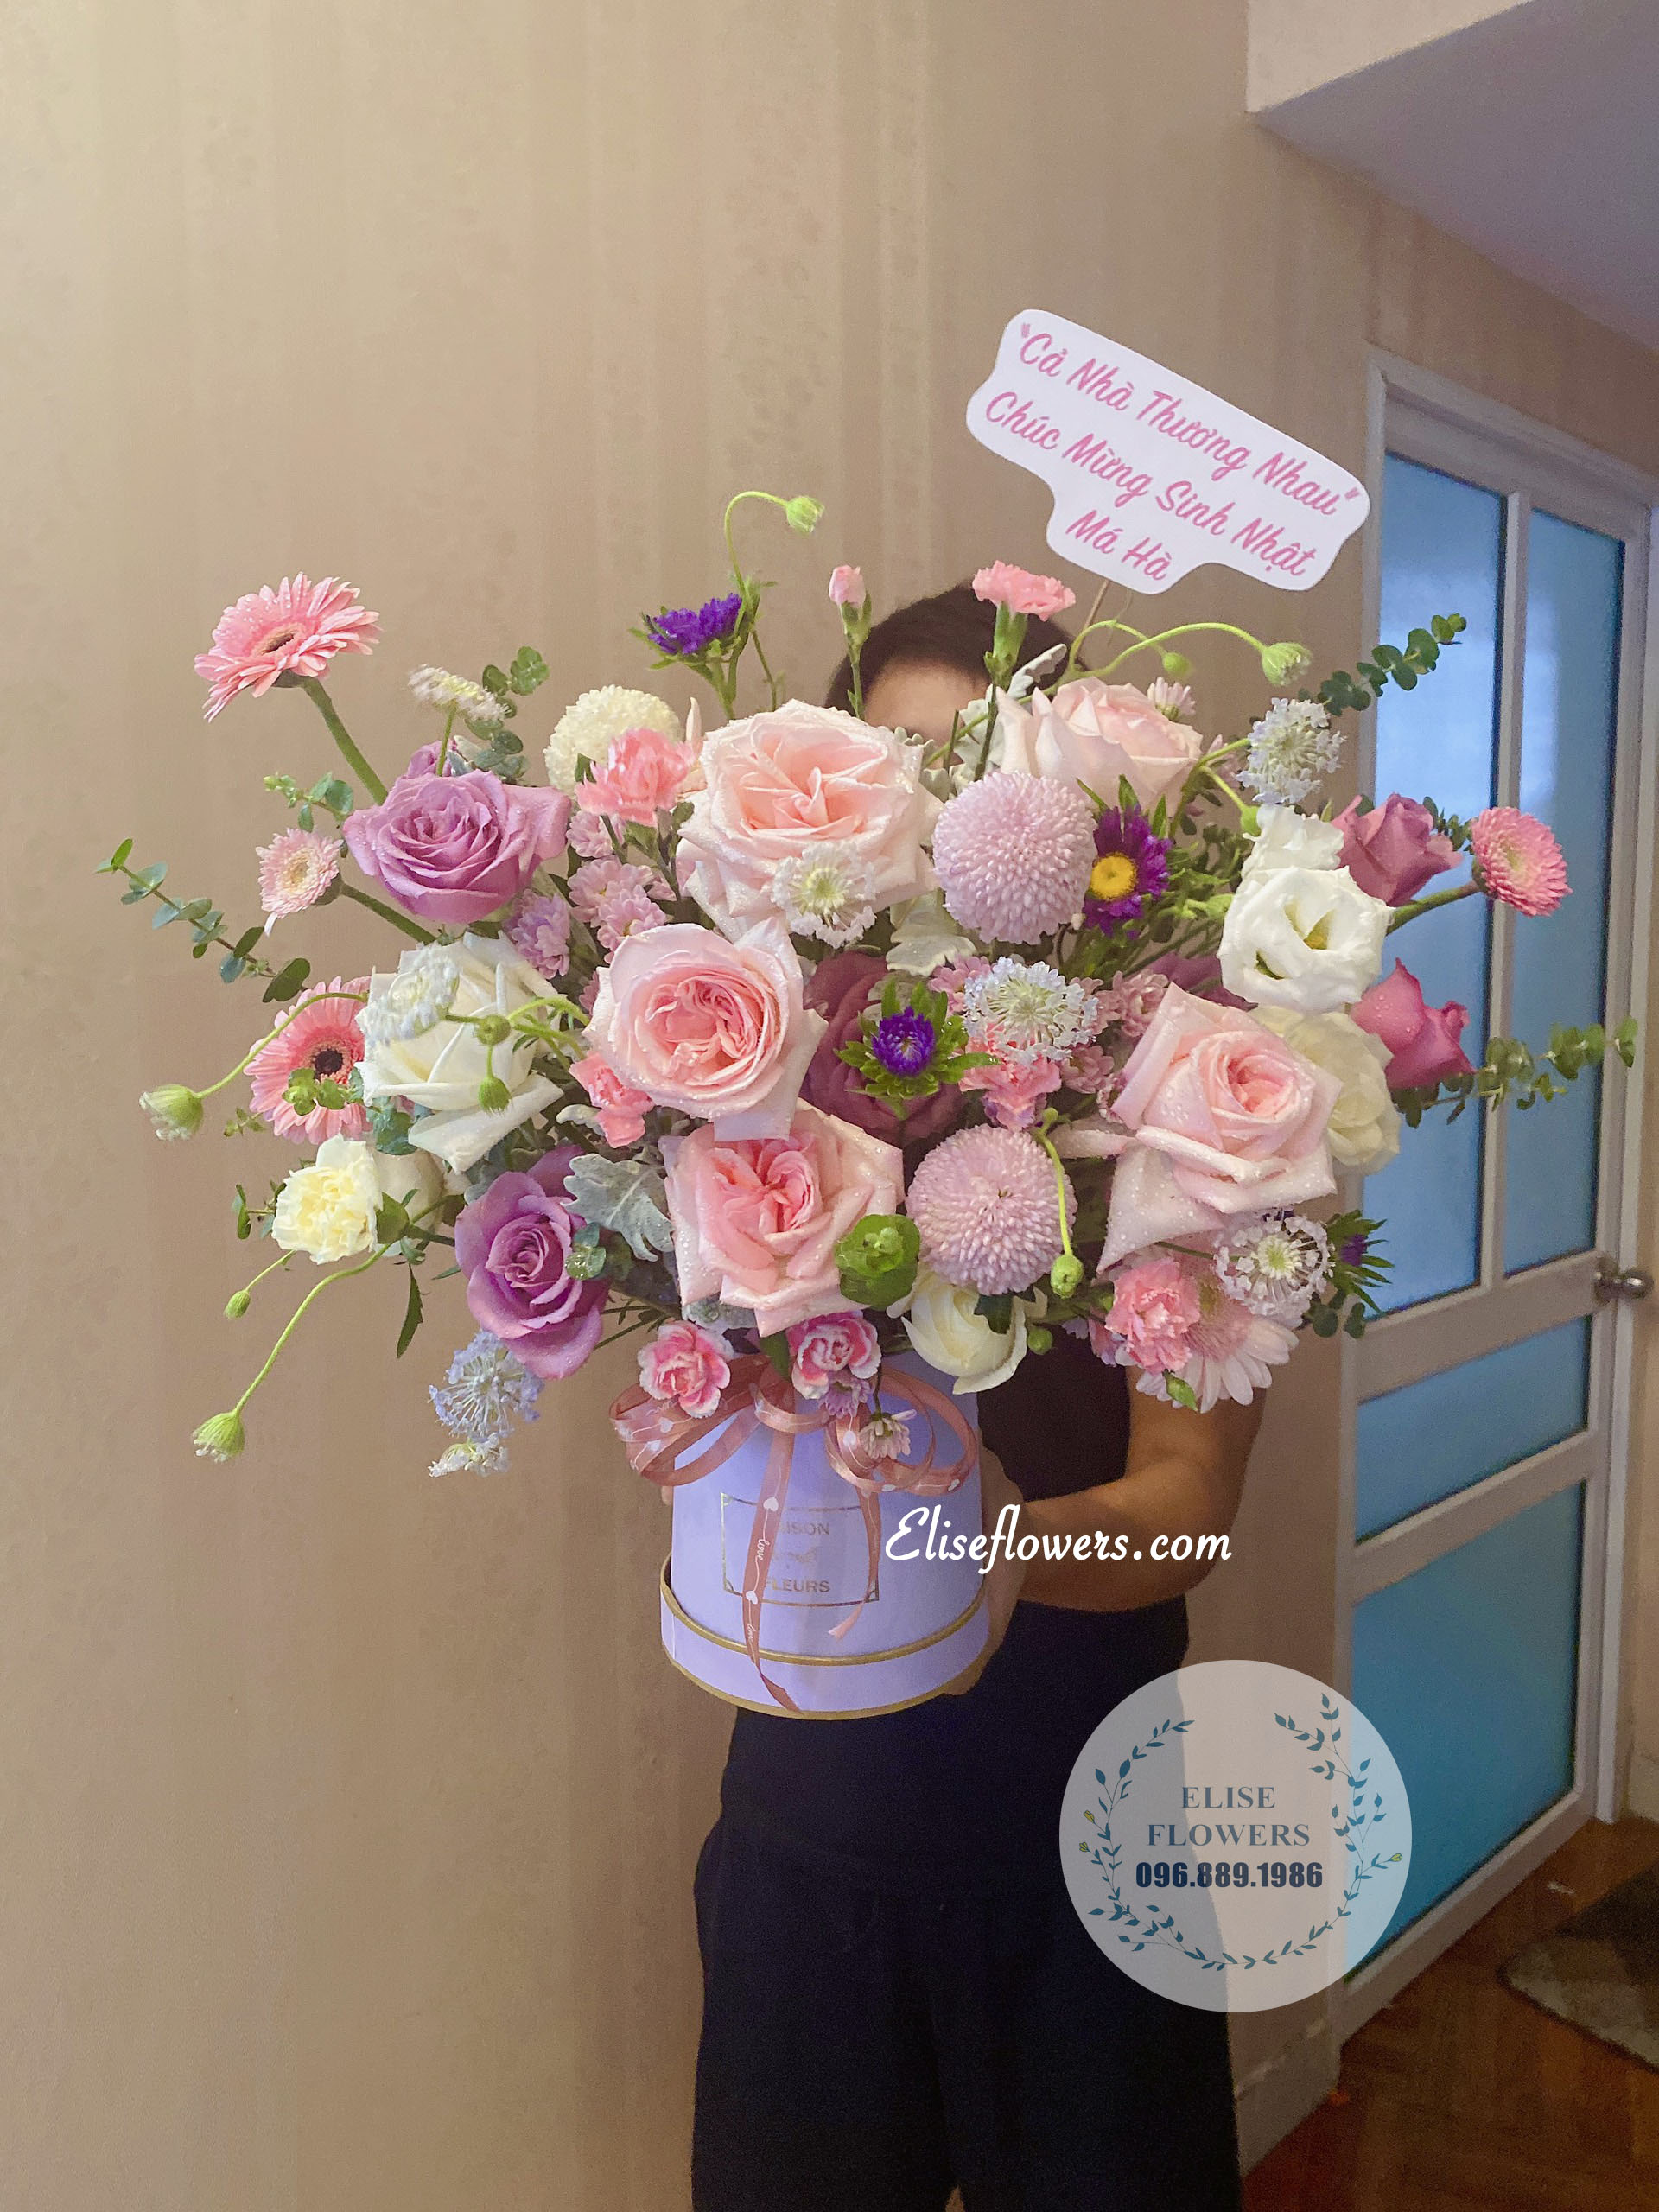 Hôp hoa hồng ohara tặng sinh nhật - Hoa sinh nhật Hà Nội - Hoa khai trương Hà Nội